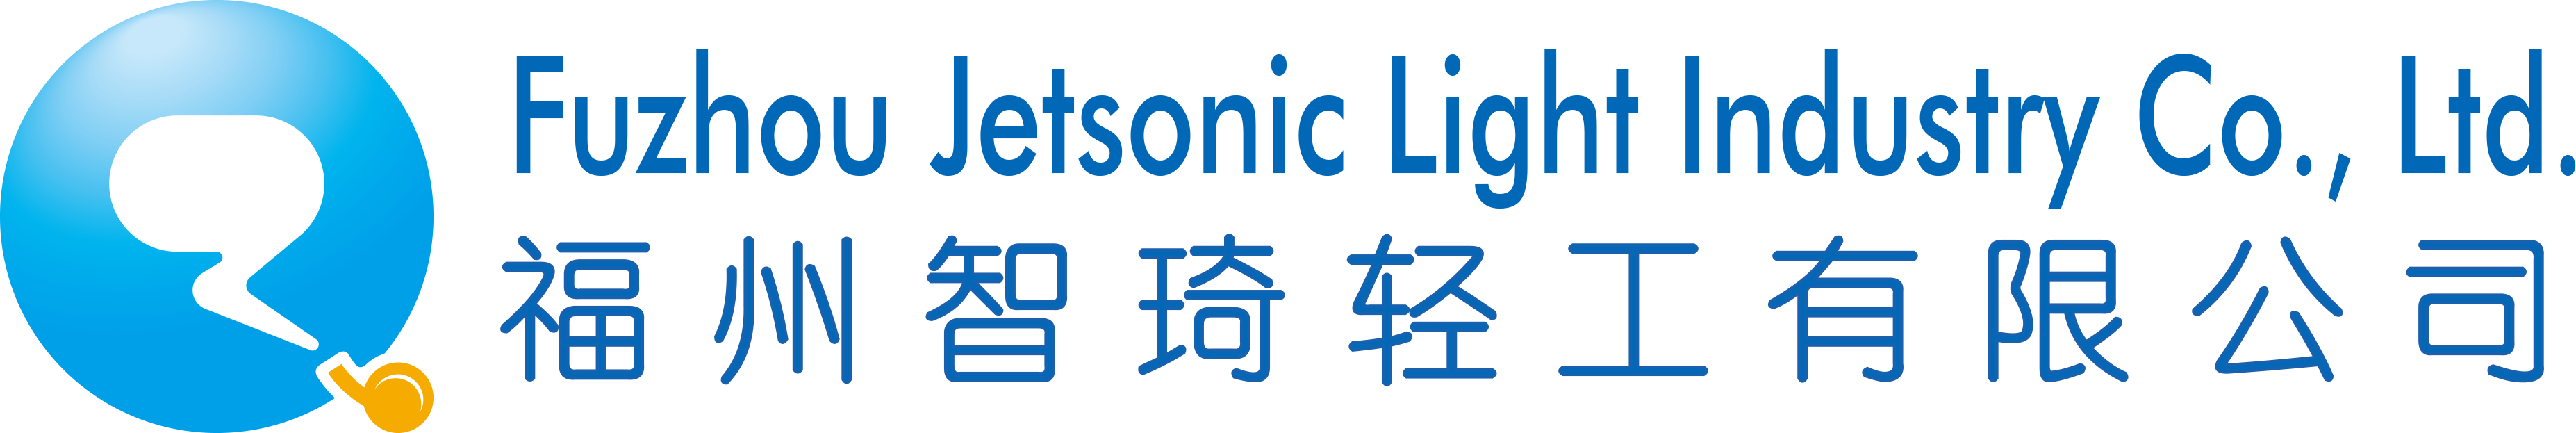 Fuzhou Jetsonic Light Industry Co., Ltd.